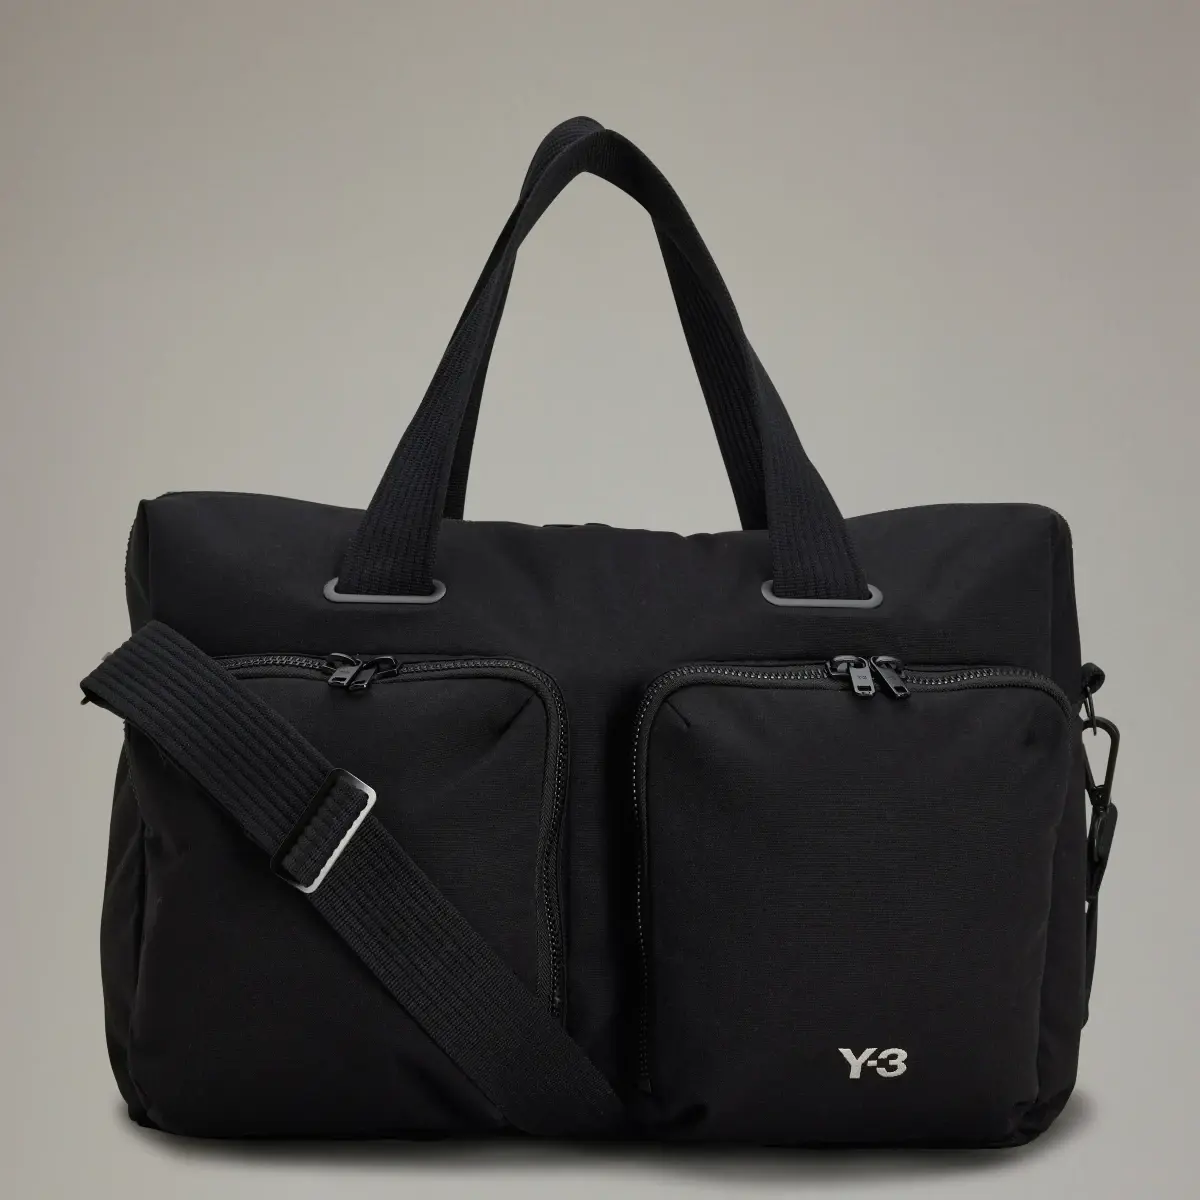 Adidas Y-3 Travel Bag. 1